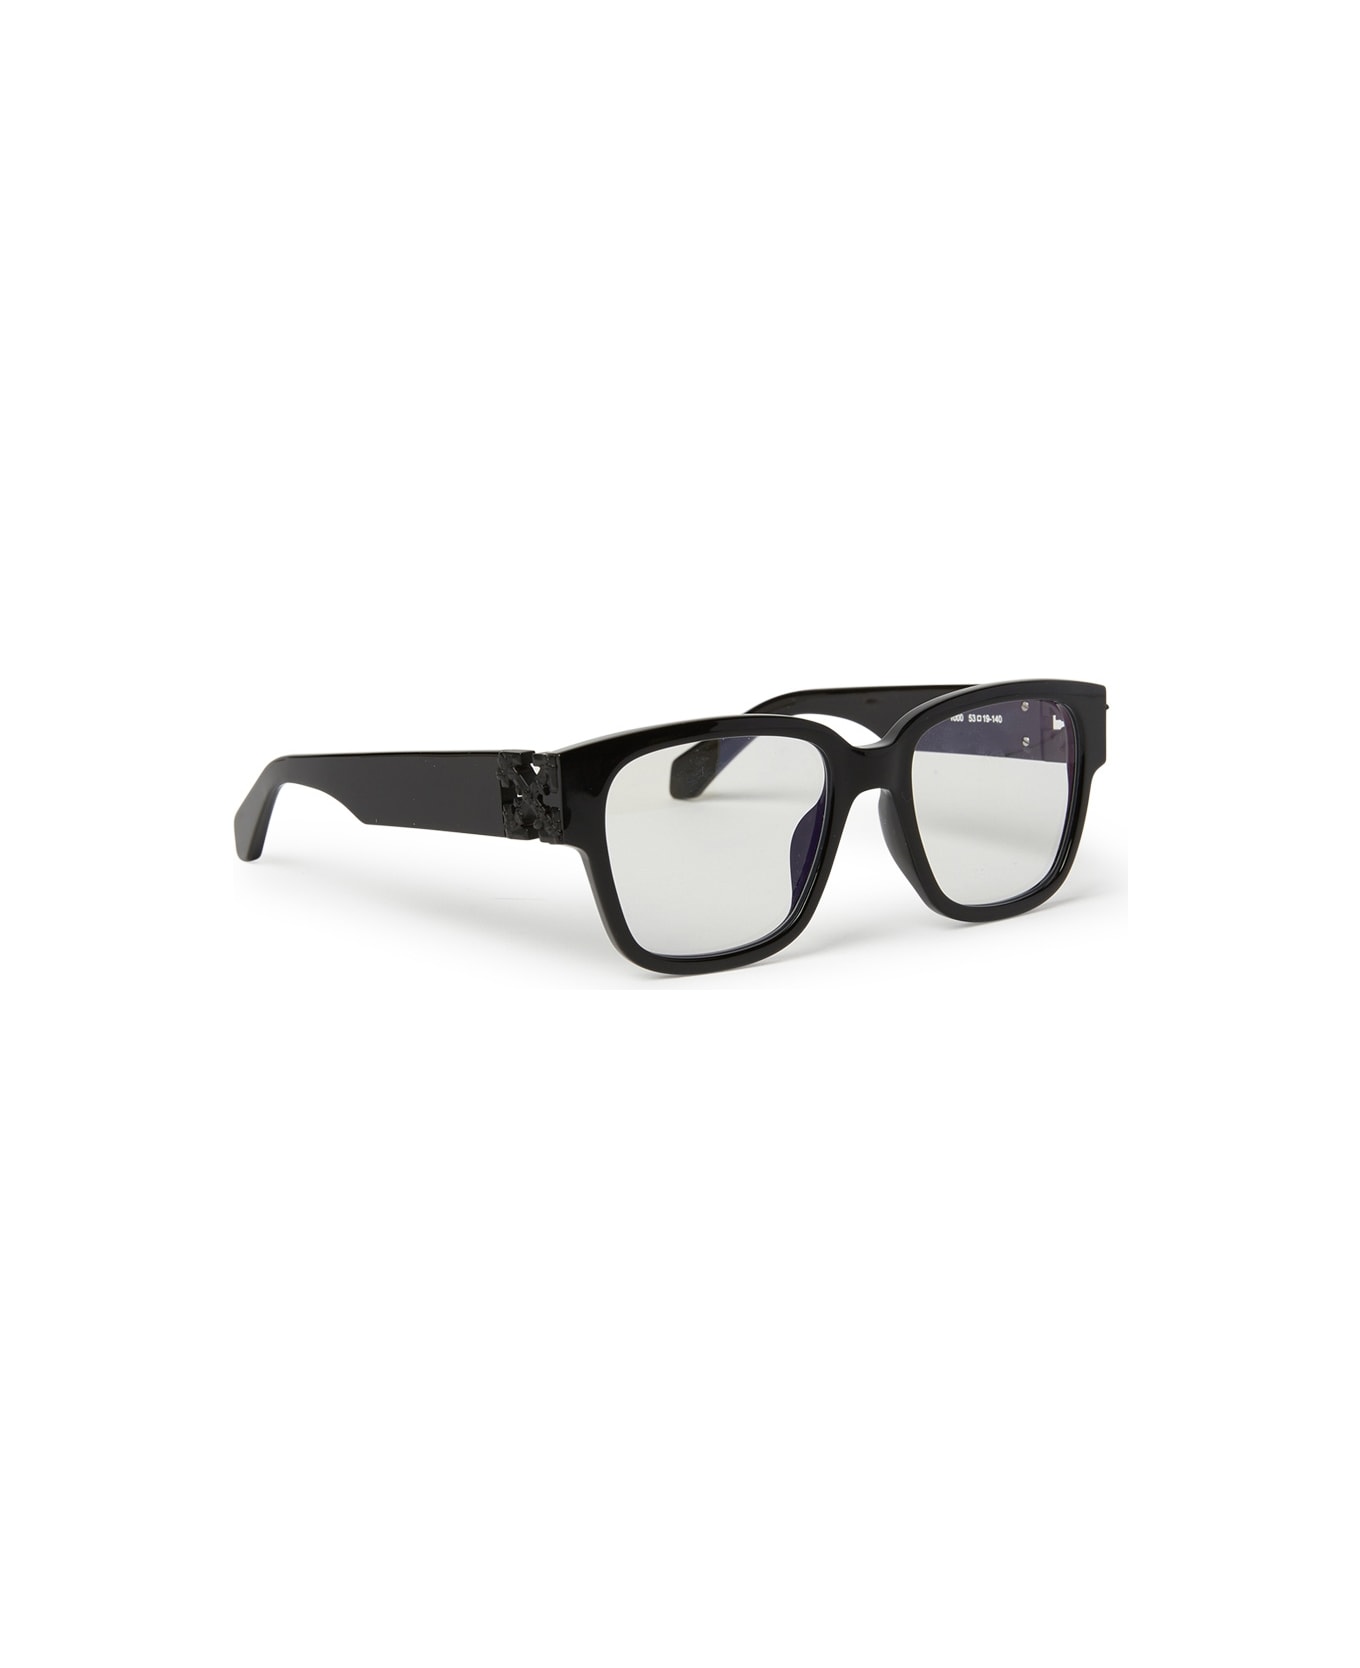 Off-White OERJ047 STYLE 47 Eyewear - Black アイウェア